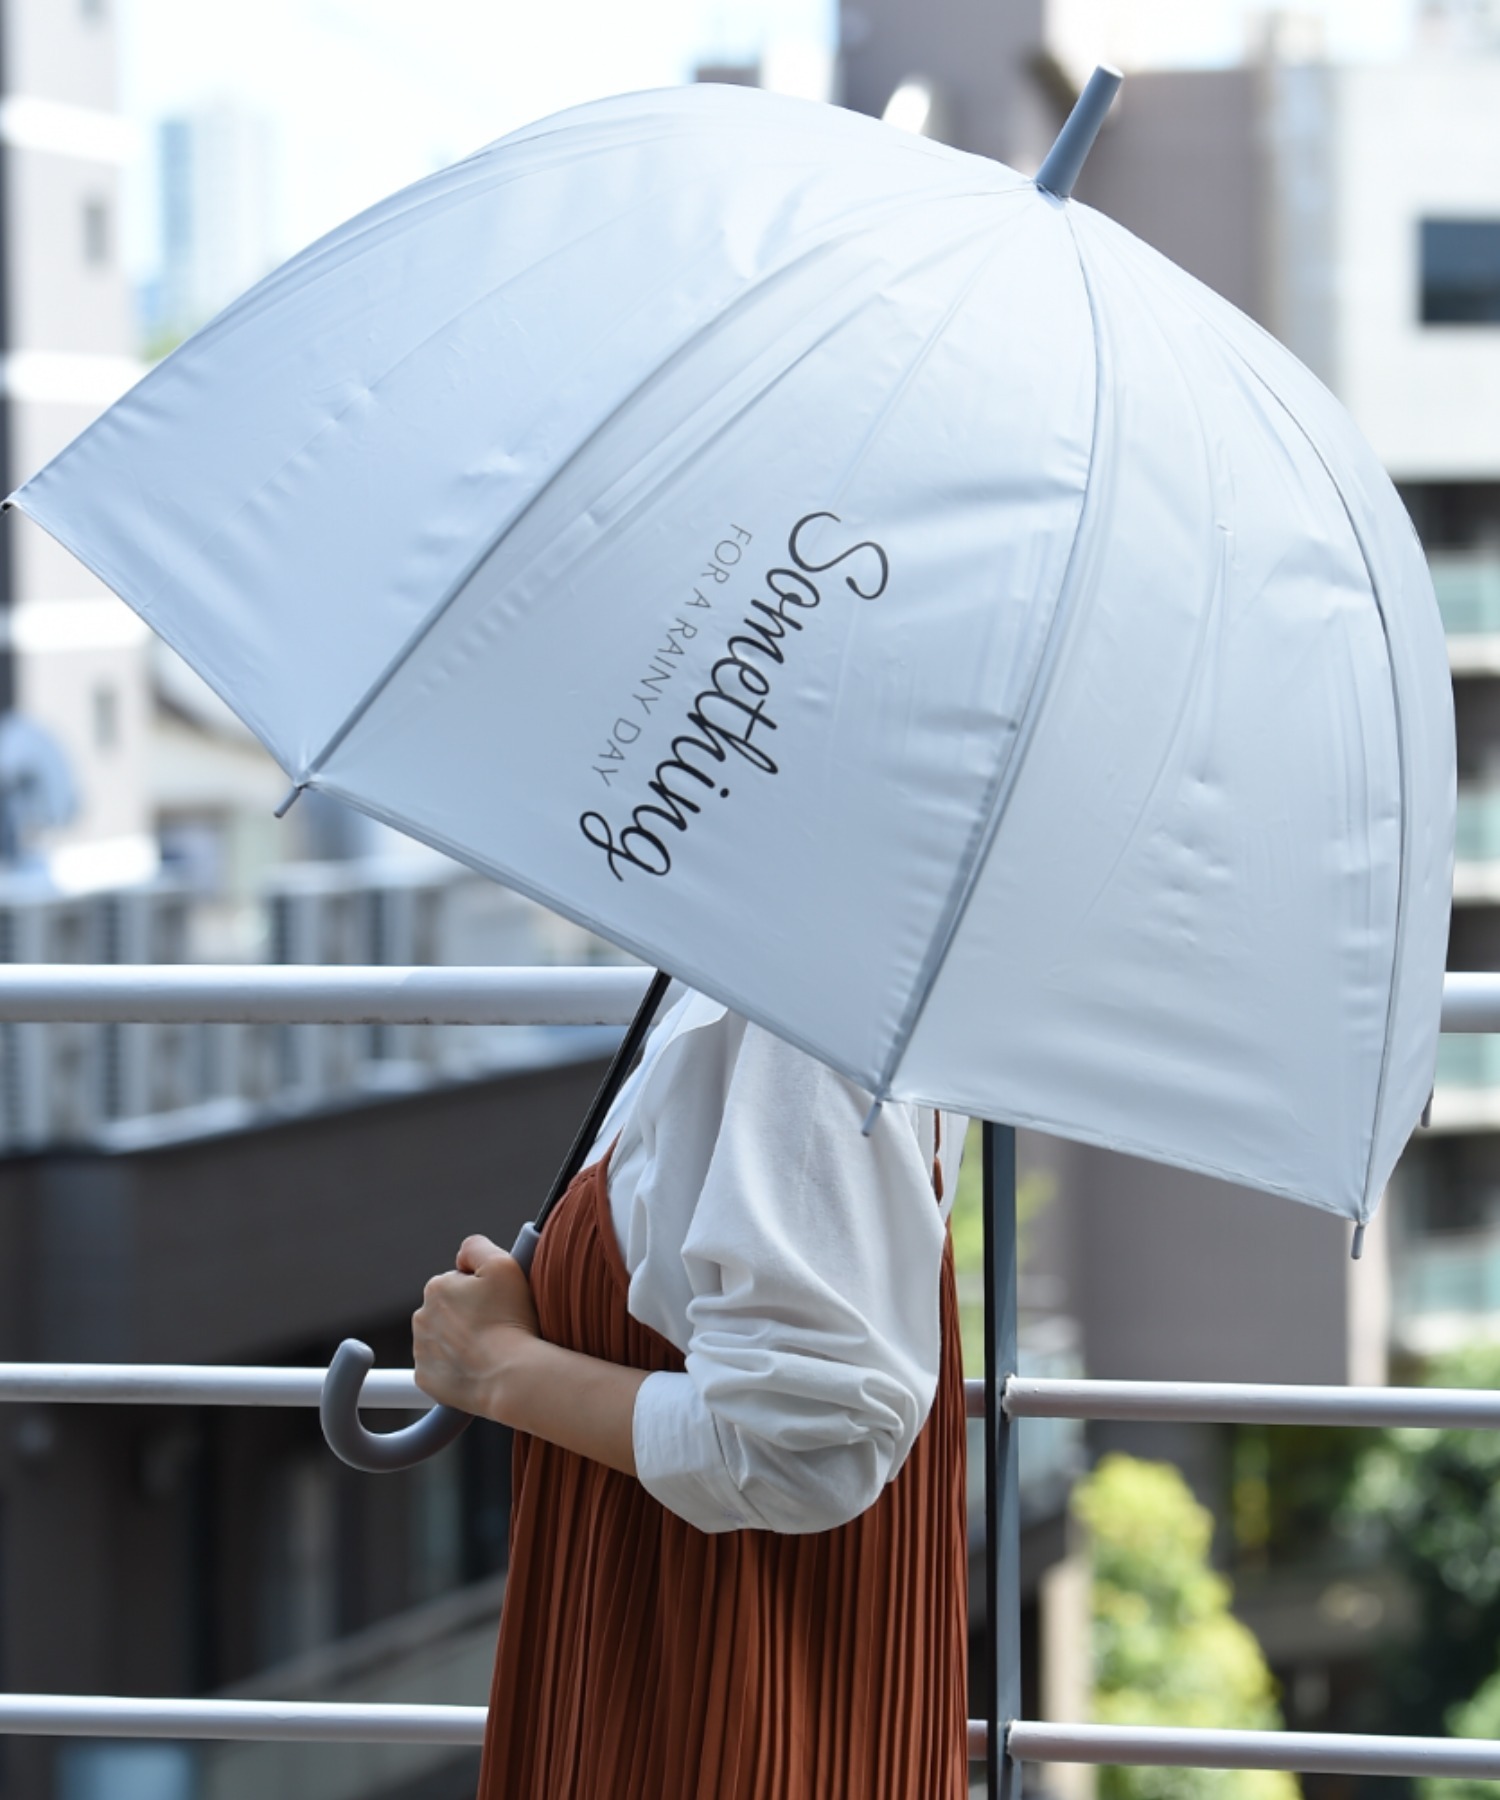 【クーポン】ドーム型傘(504301407) | インタープラネット 